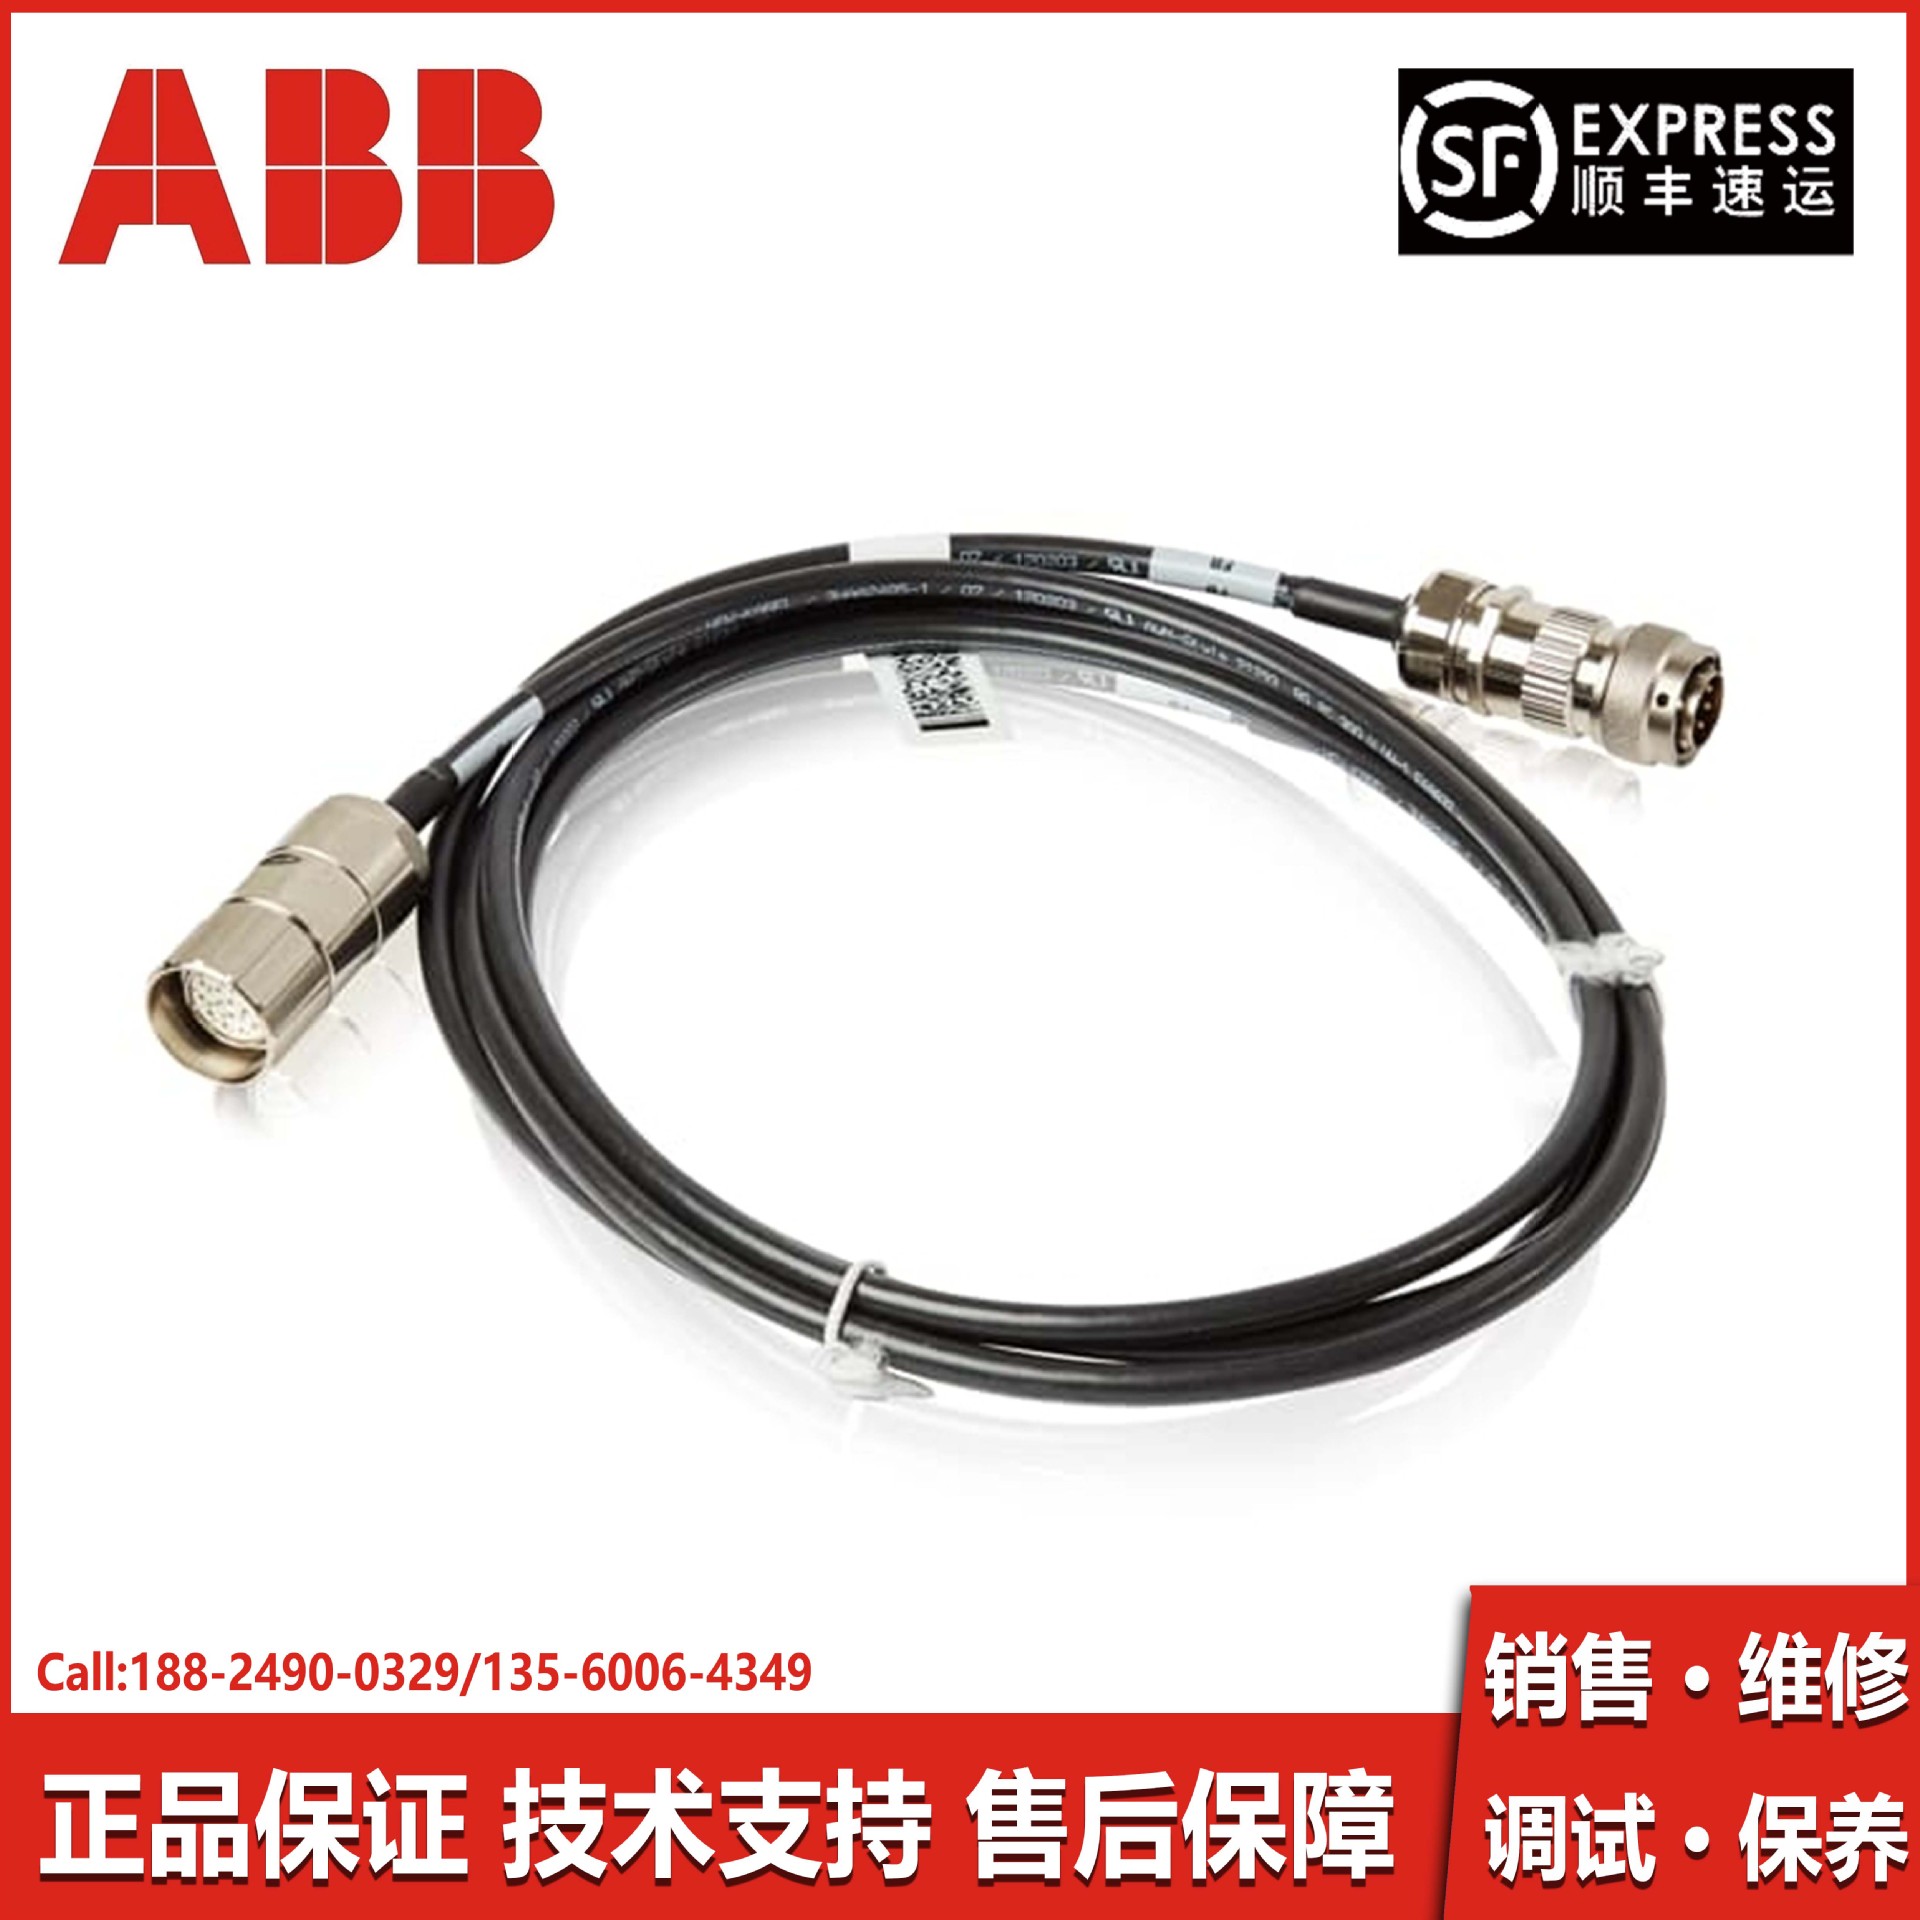 ABB电缆3HAC039602-001机器人线缆原装备件